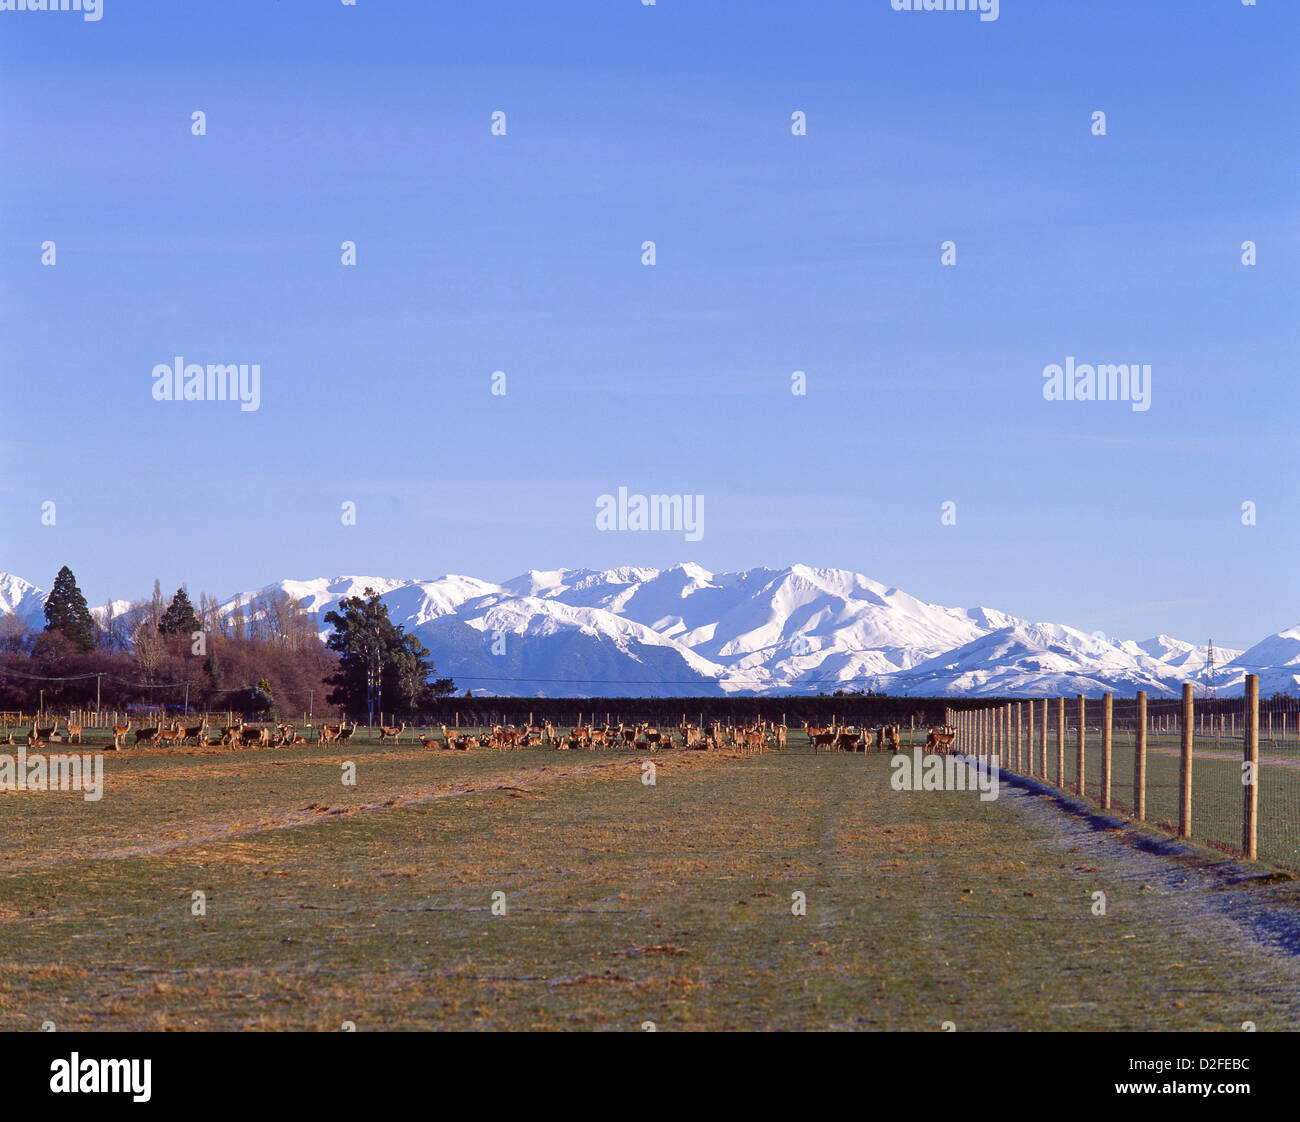 Snow-capped Alpi meridionali e cervi in pascolo, Canterbury Plains, regione di Canterbury, Isola del Sud, Nuova Zelanda Foto Stock